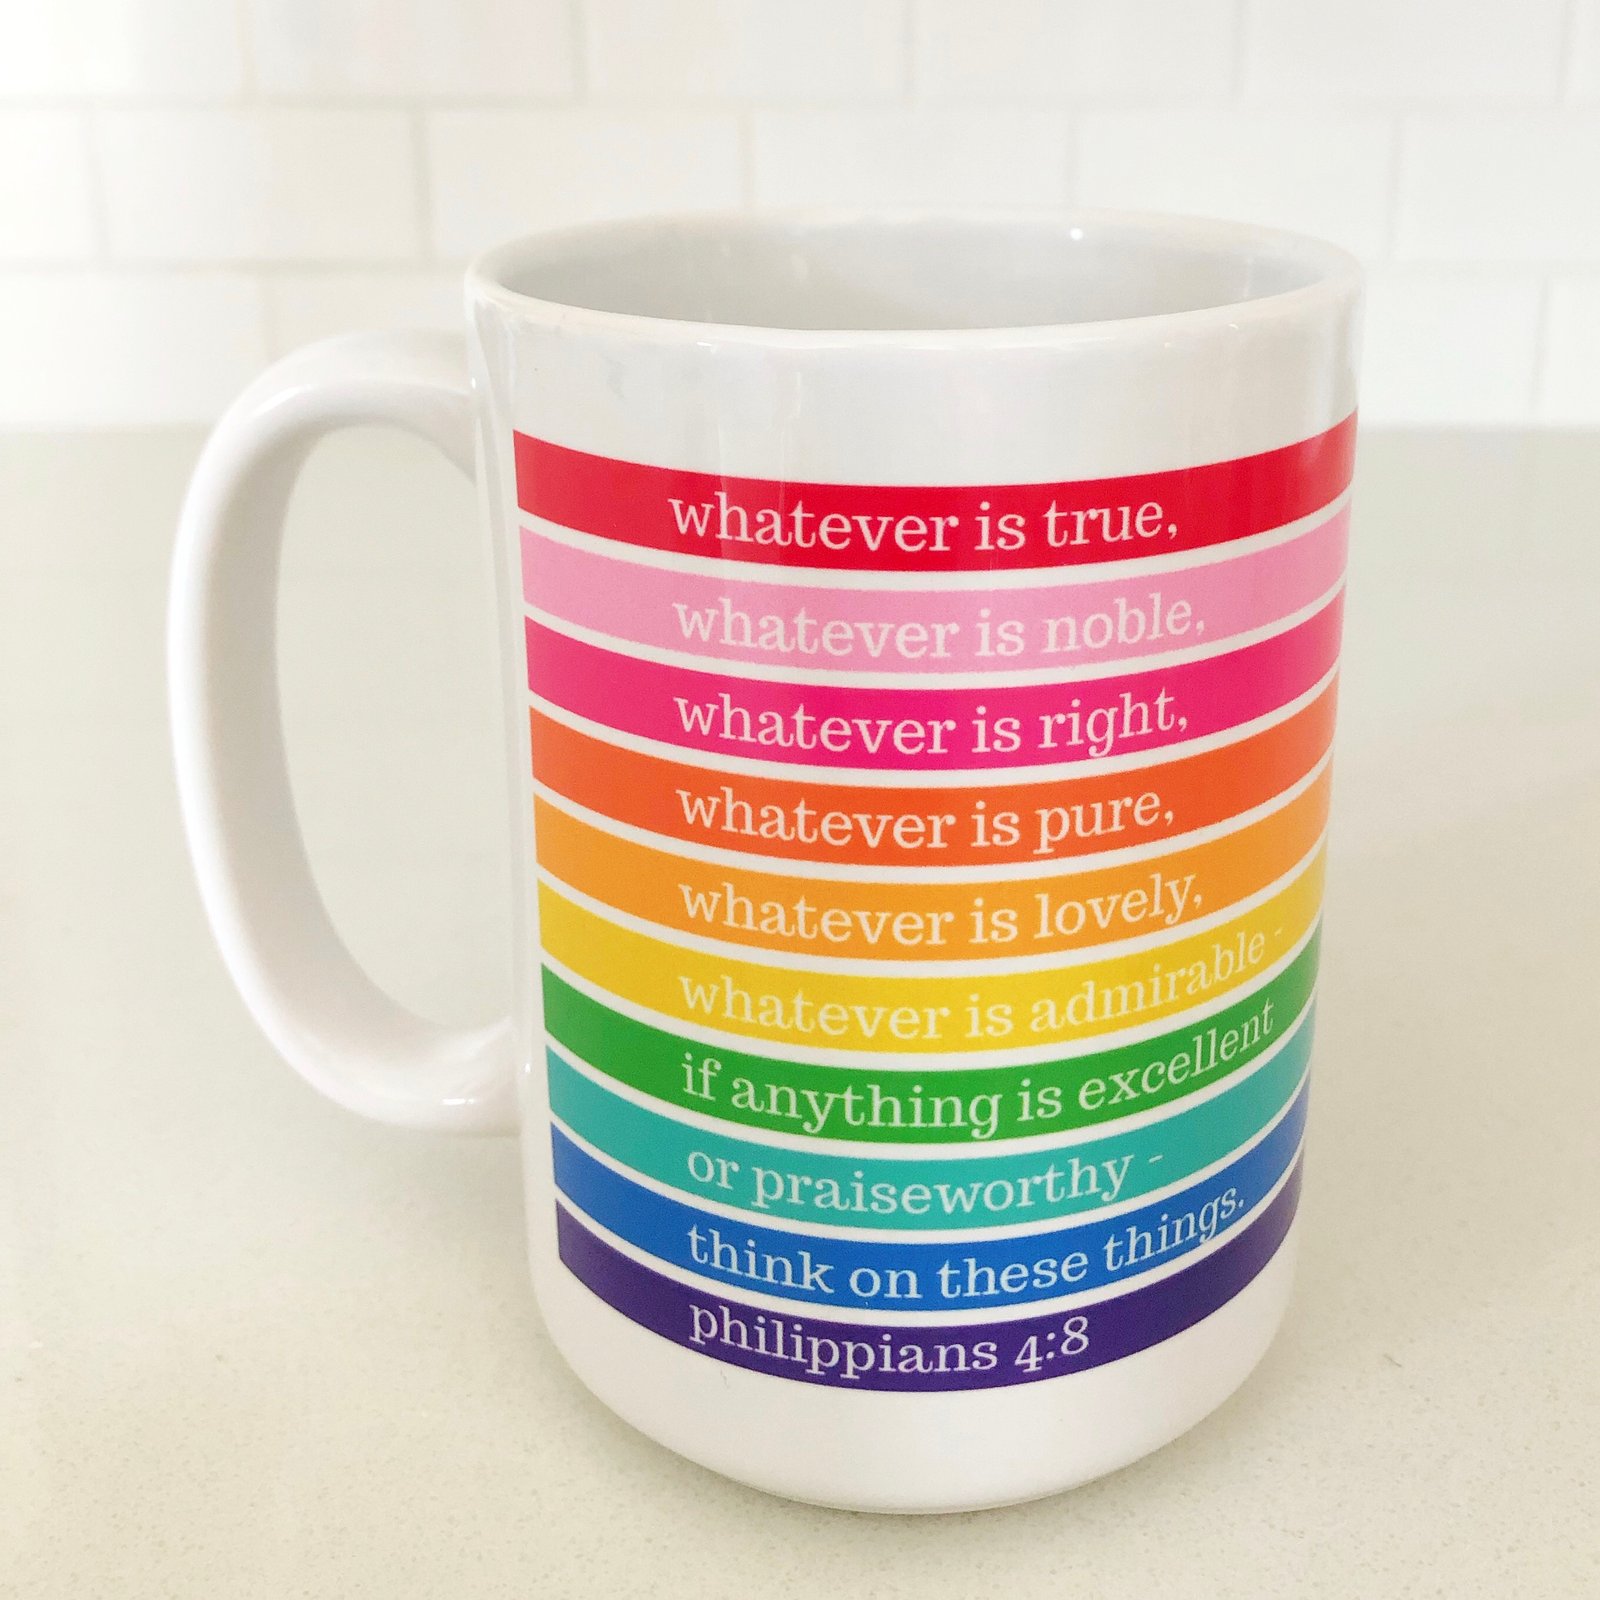 rainbow cup